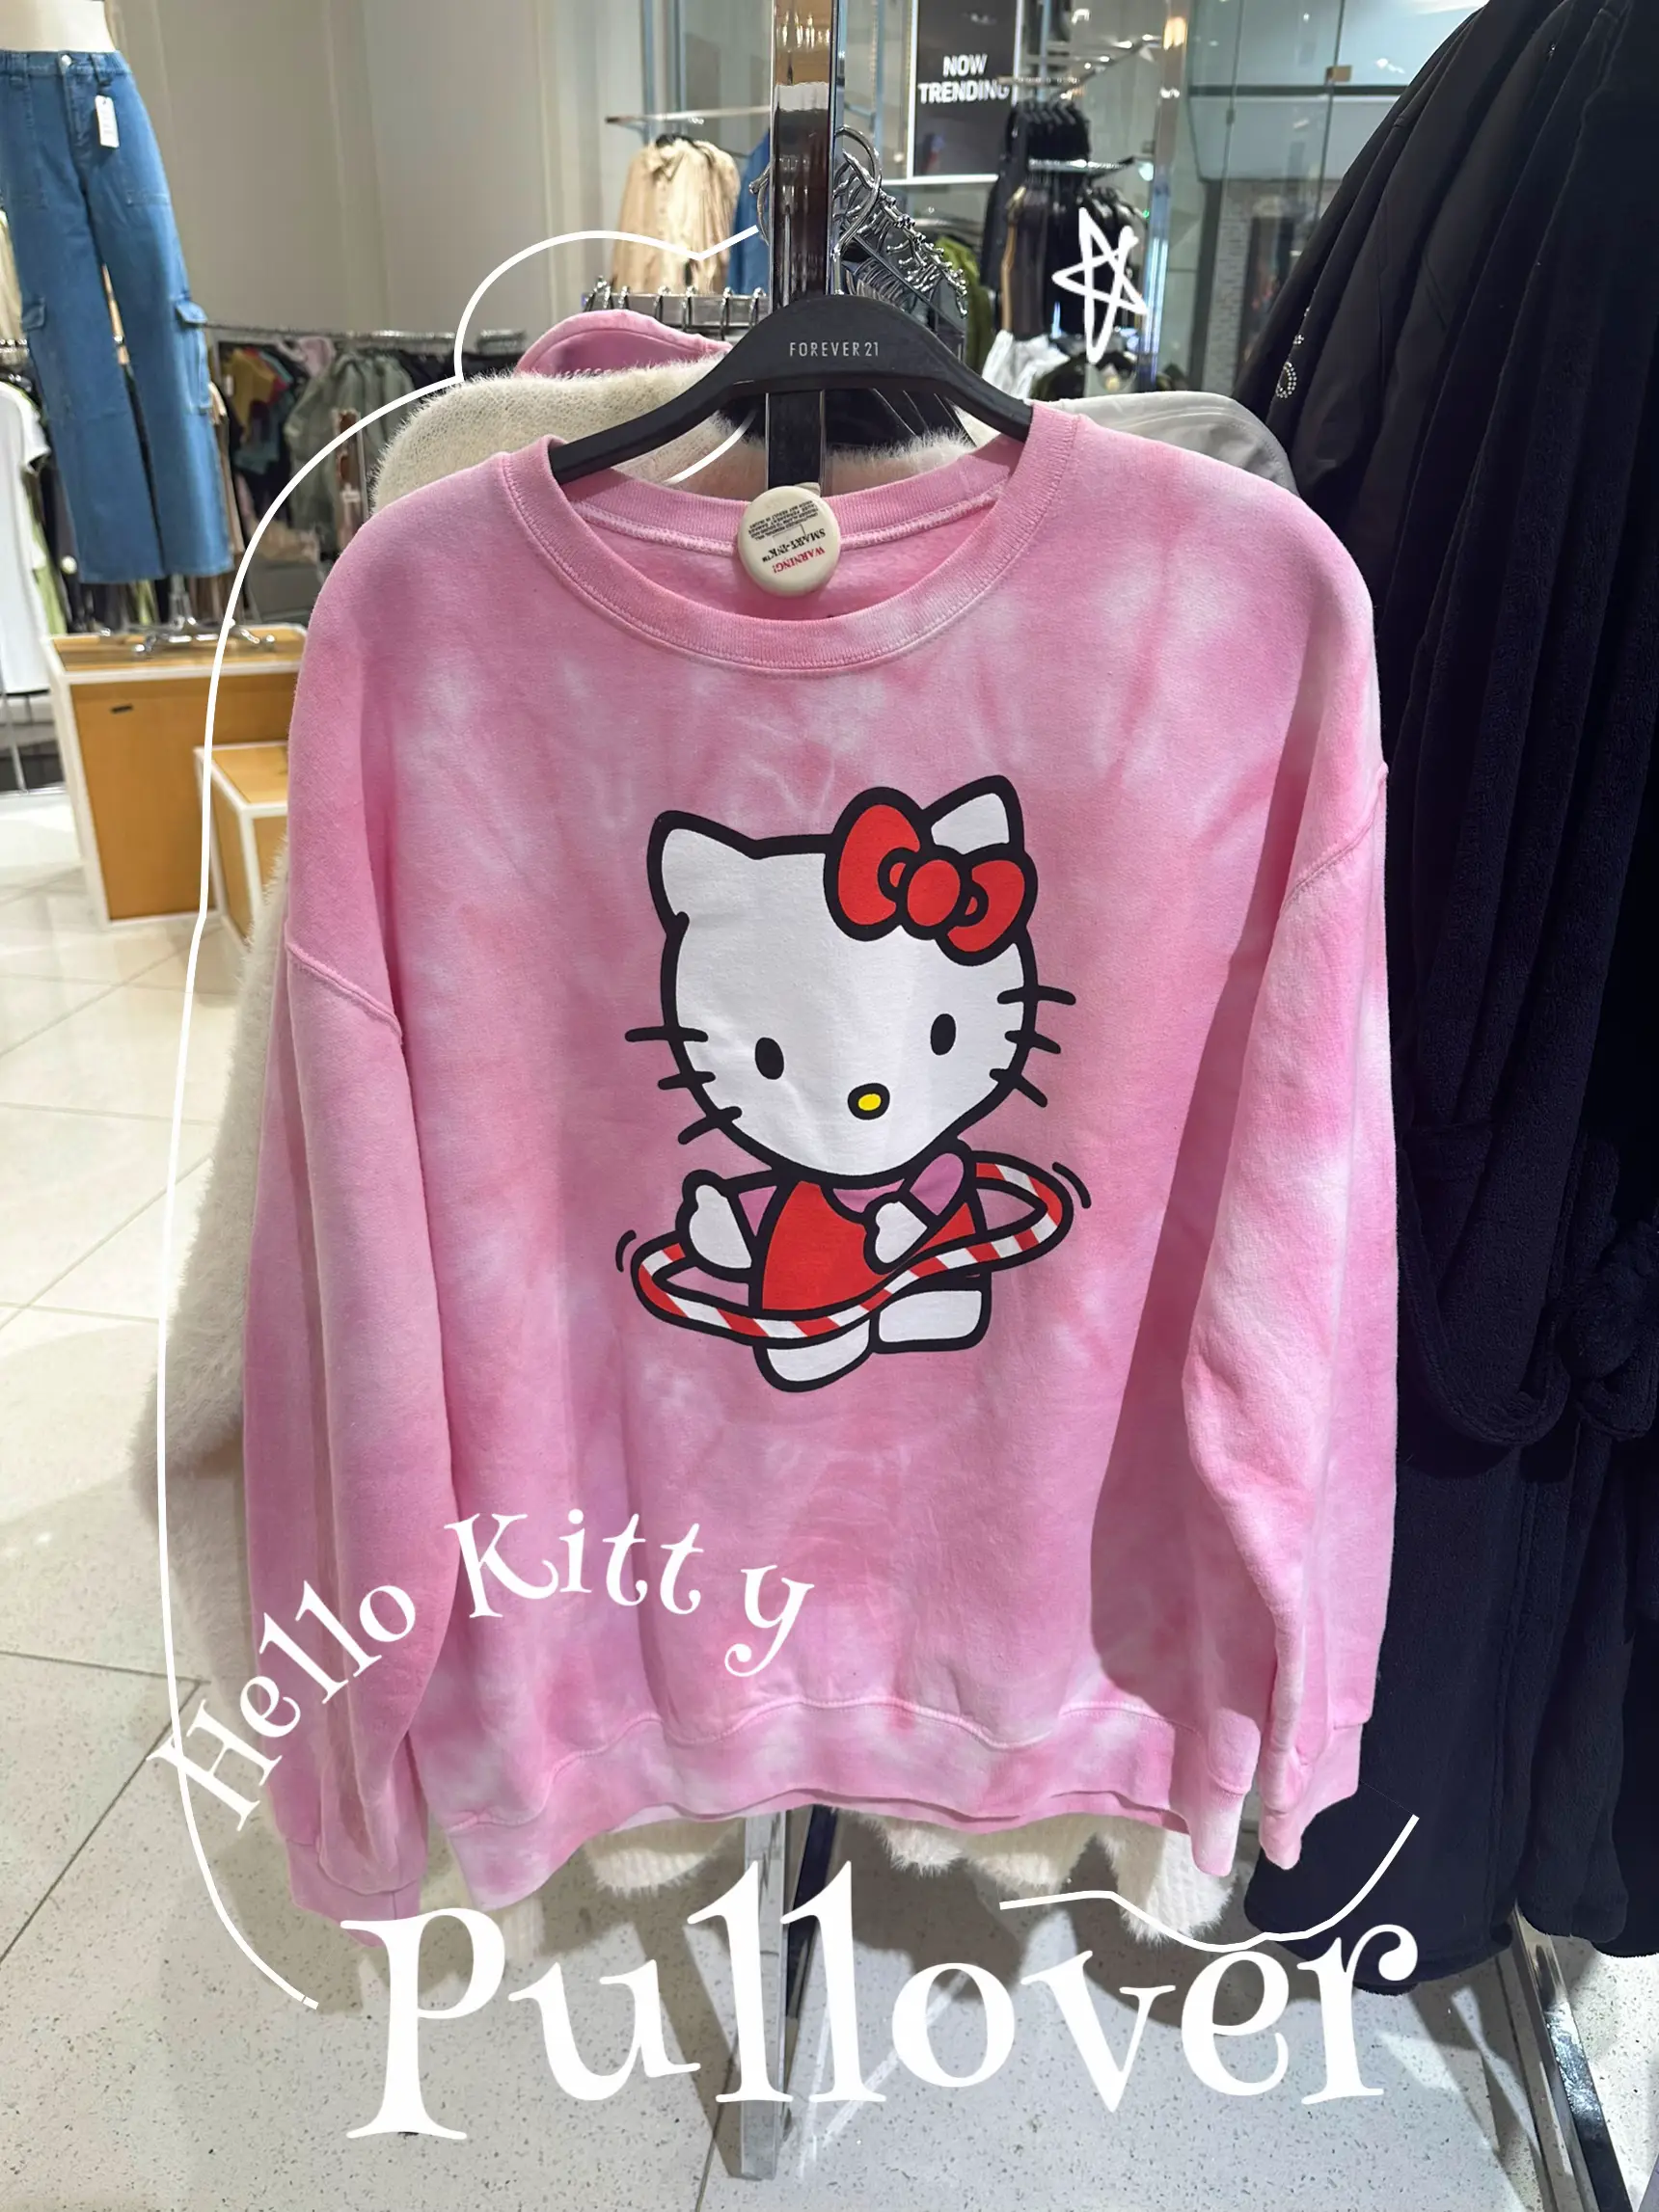 Hello Kitty Forever 21 Bralette Short Set NEW 💕